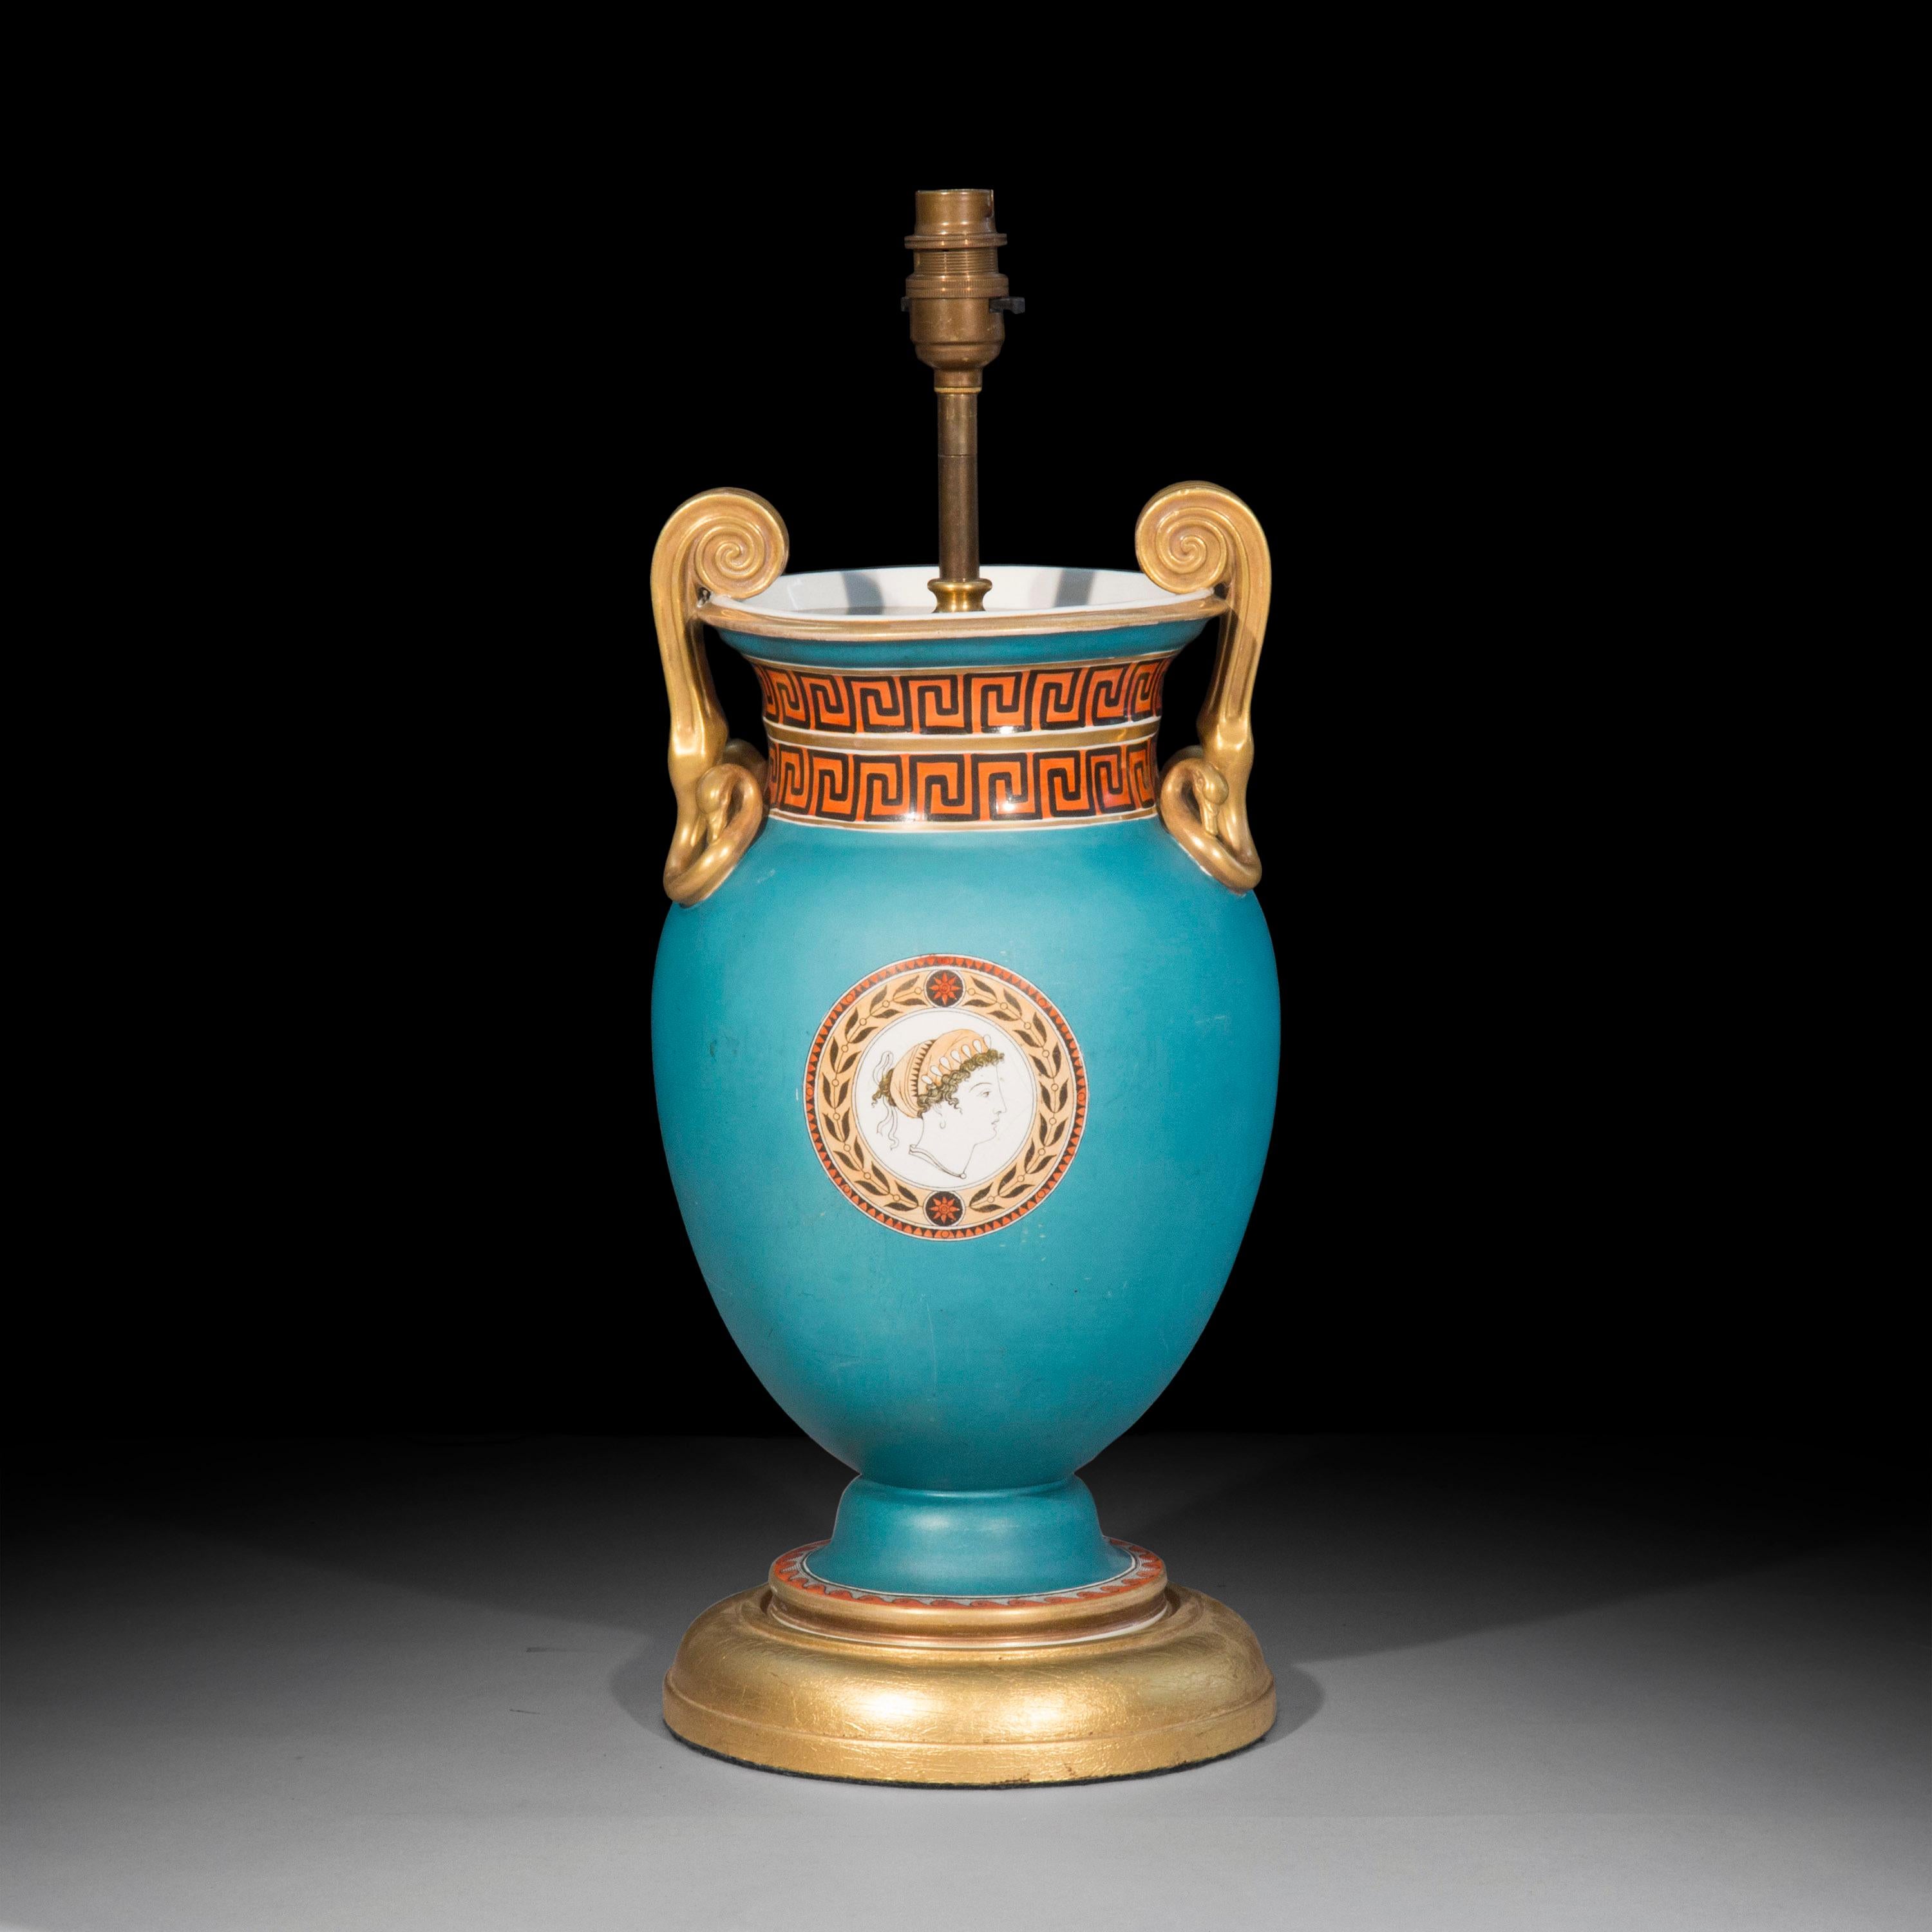 Un vase Grand Tour très décoratif d'après un design de Thomas Hope, monté en lampe de table, en porcelaine avec un fond turquoise mat et des ornements classiques émaillés.
Anglais, début du 19e siècle.

Pourquoi nous l'aimons
Une lampe de table